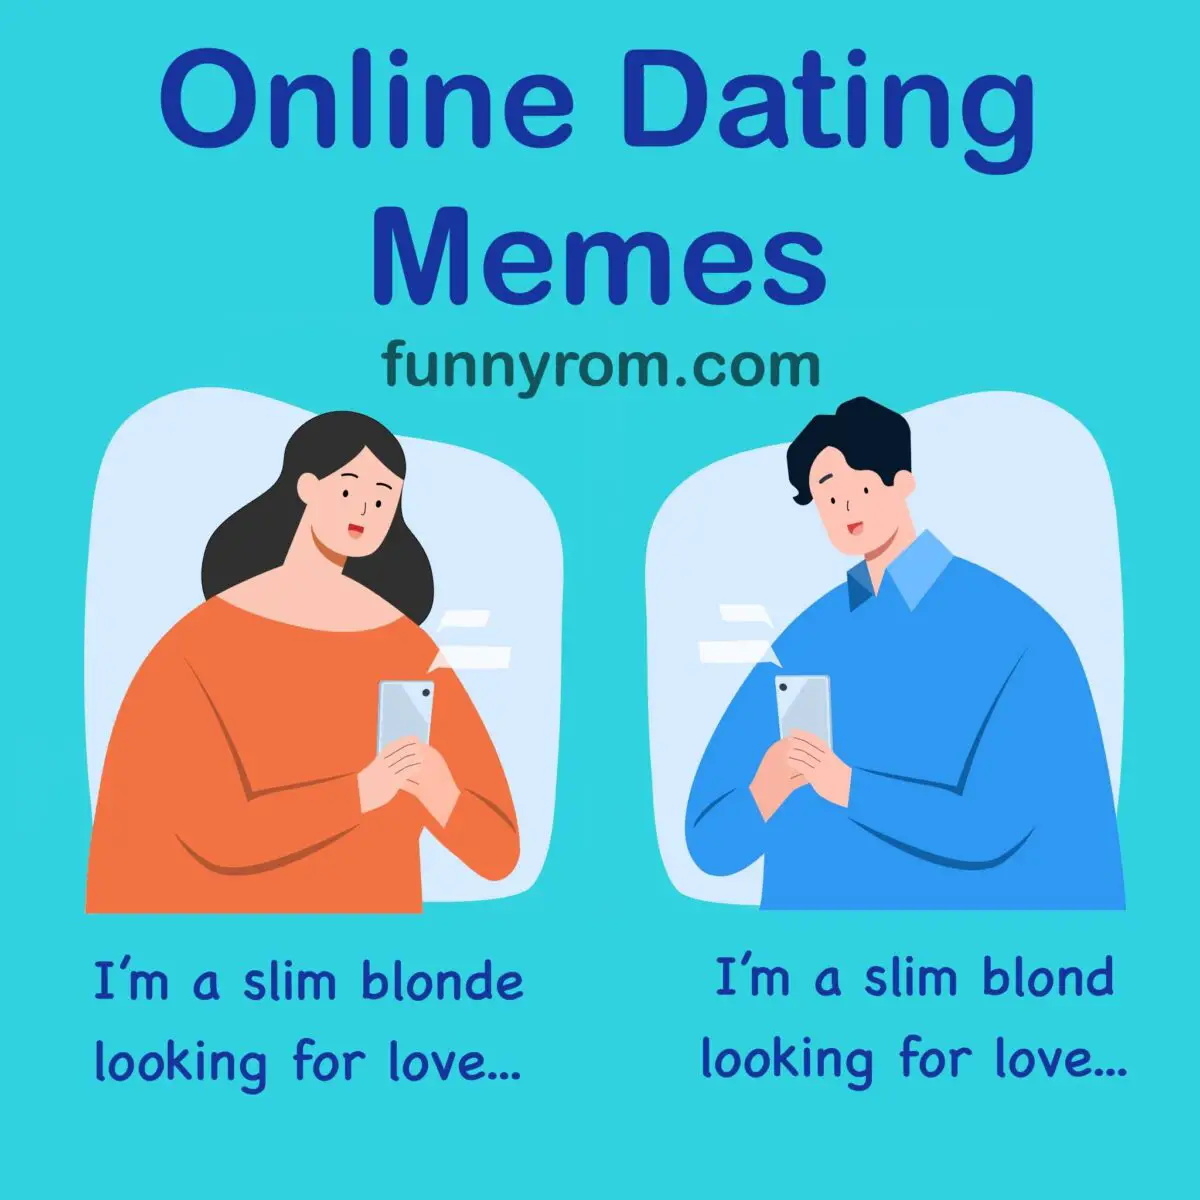 lovememe free dating